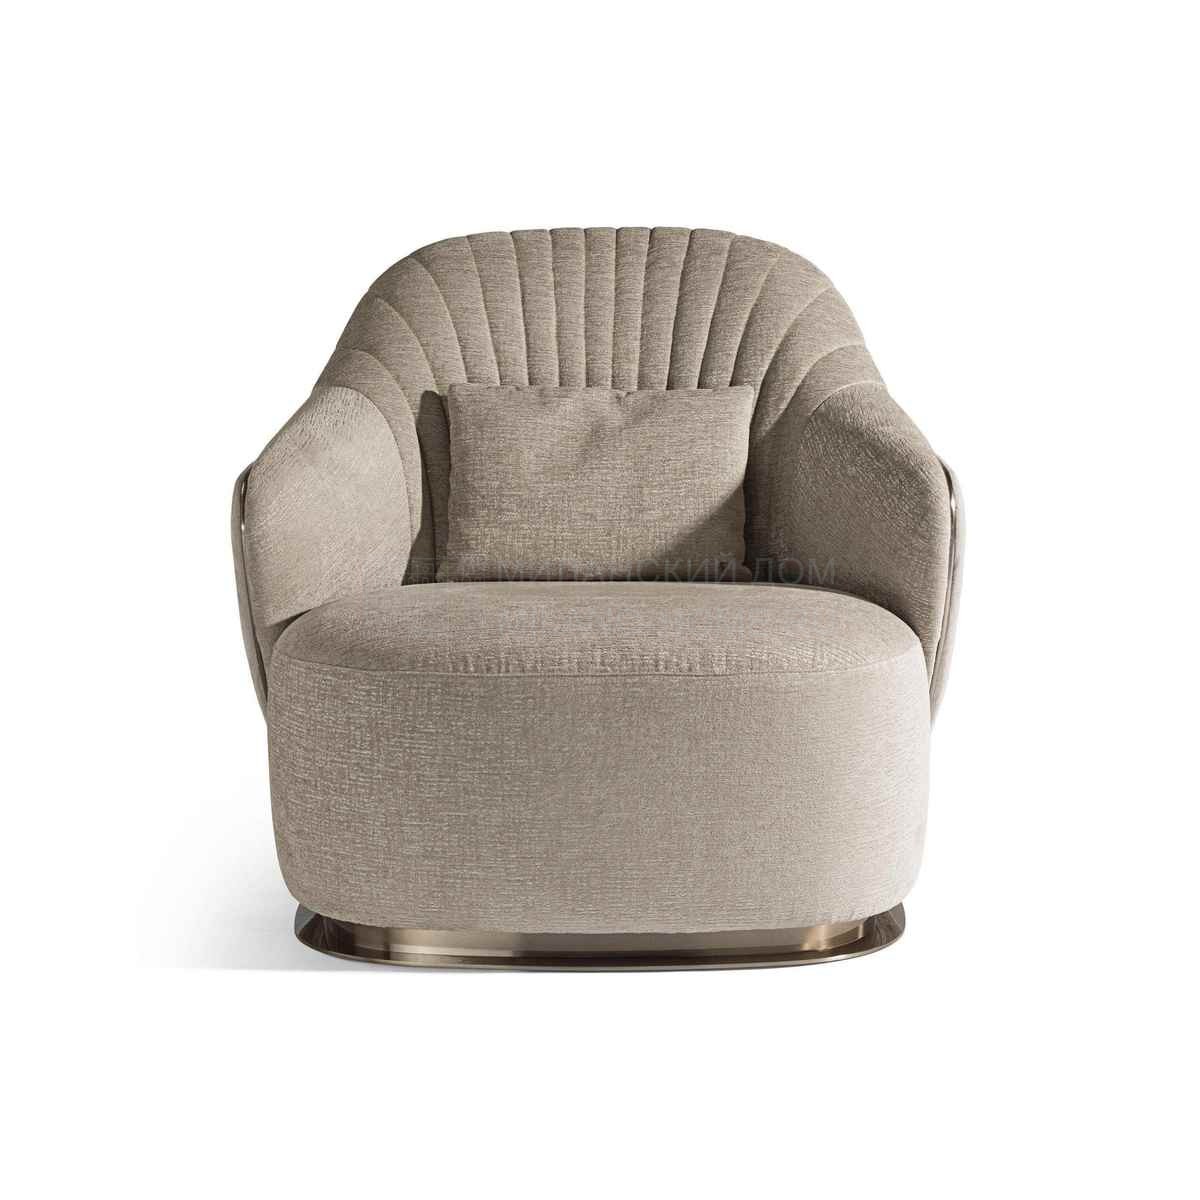 Круглое кресло Adele armchair из Италии фабрики IPE CAVALLI VISIONNAIRE